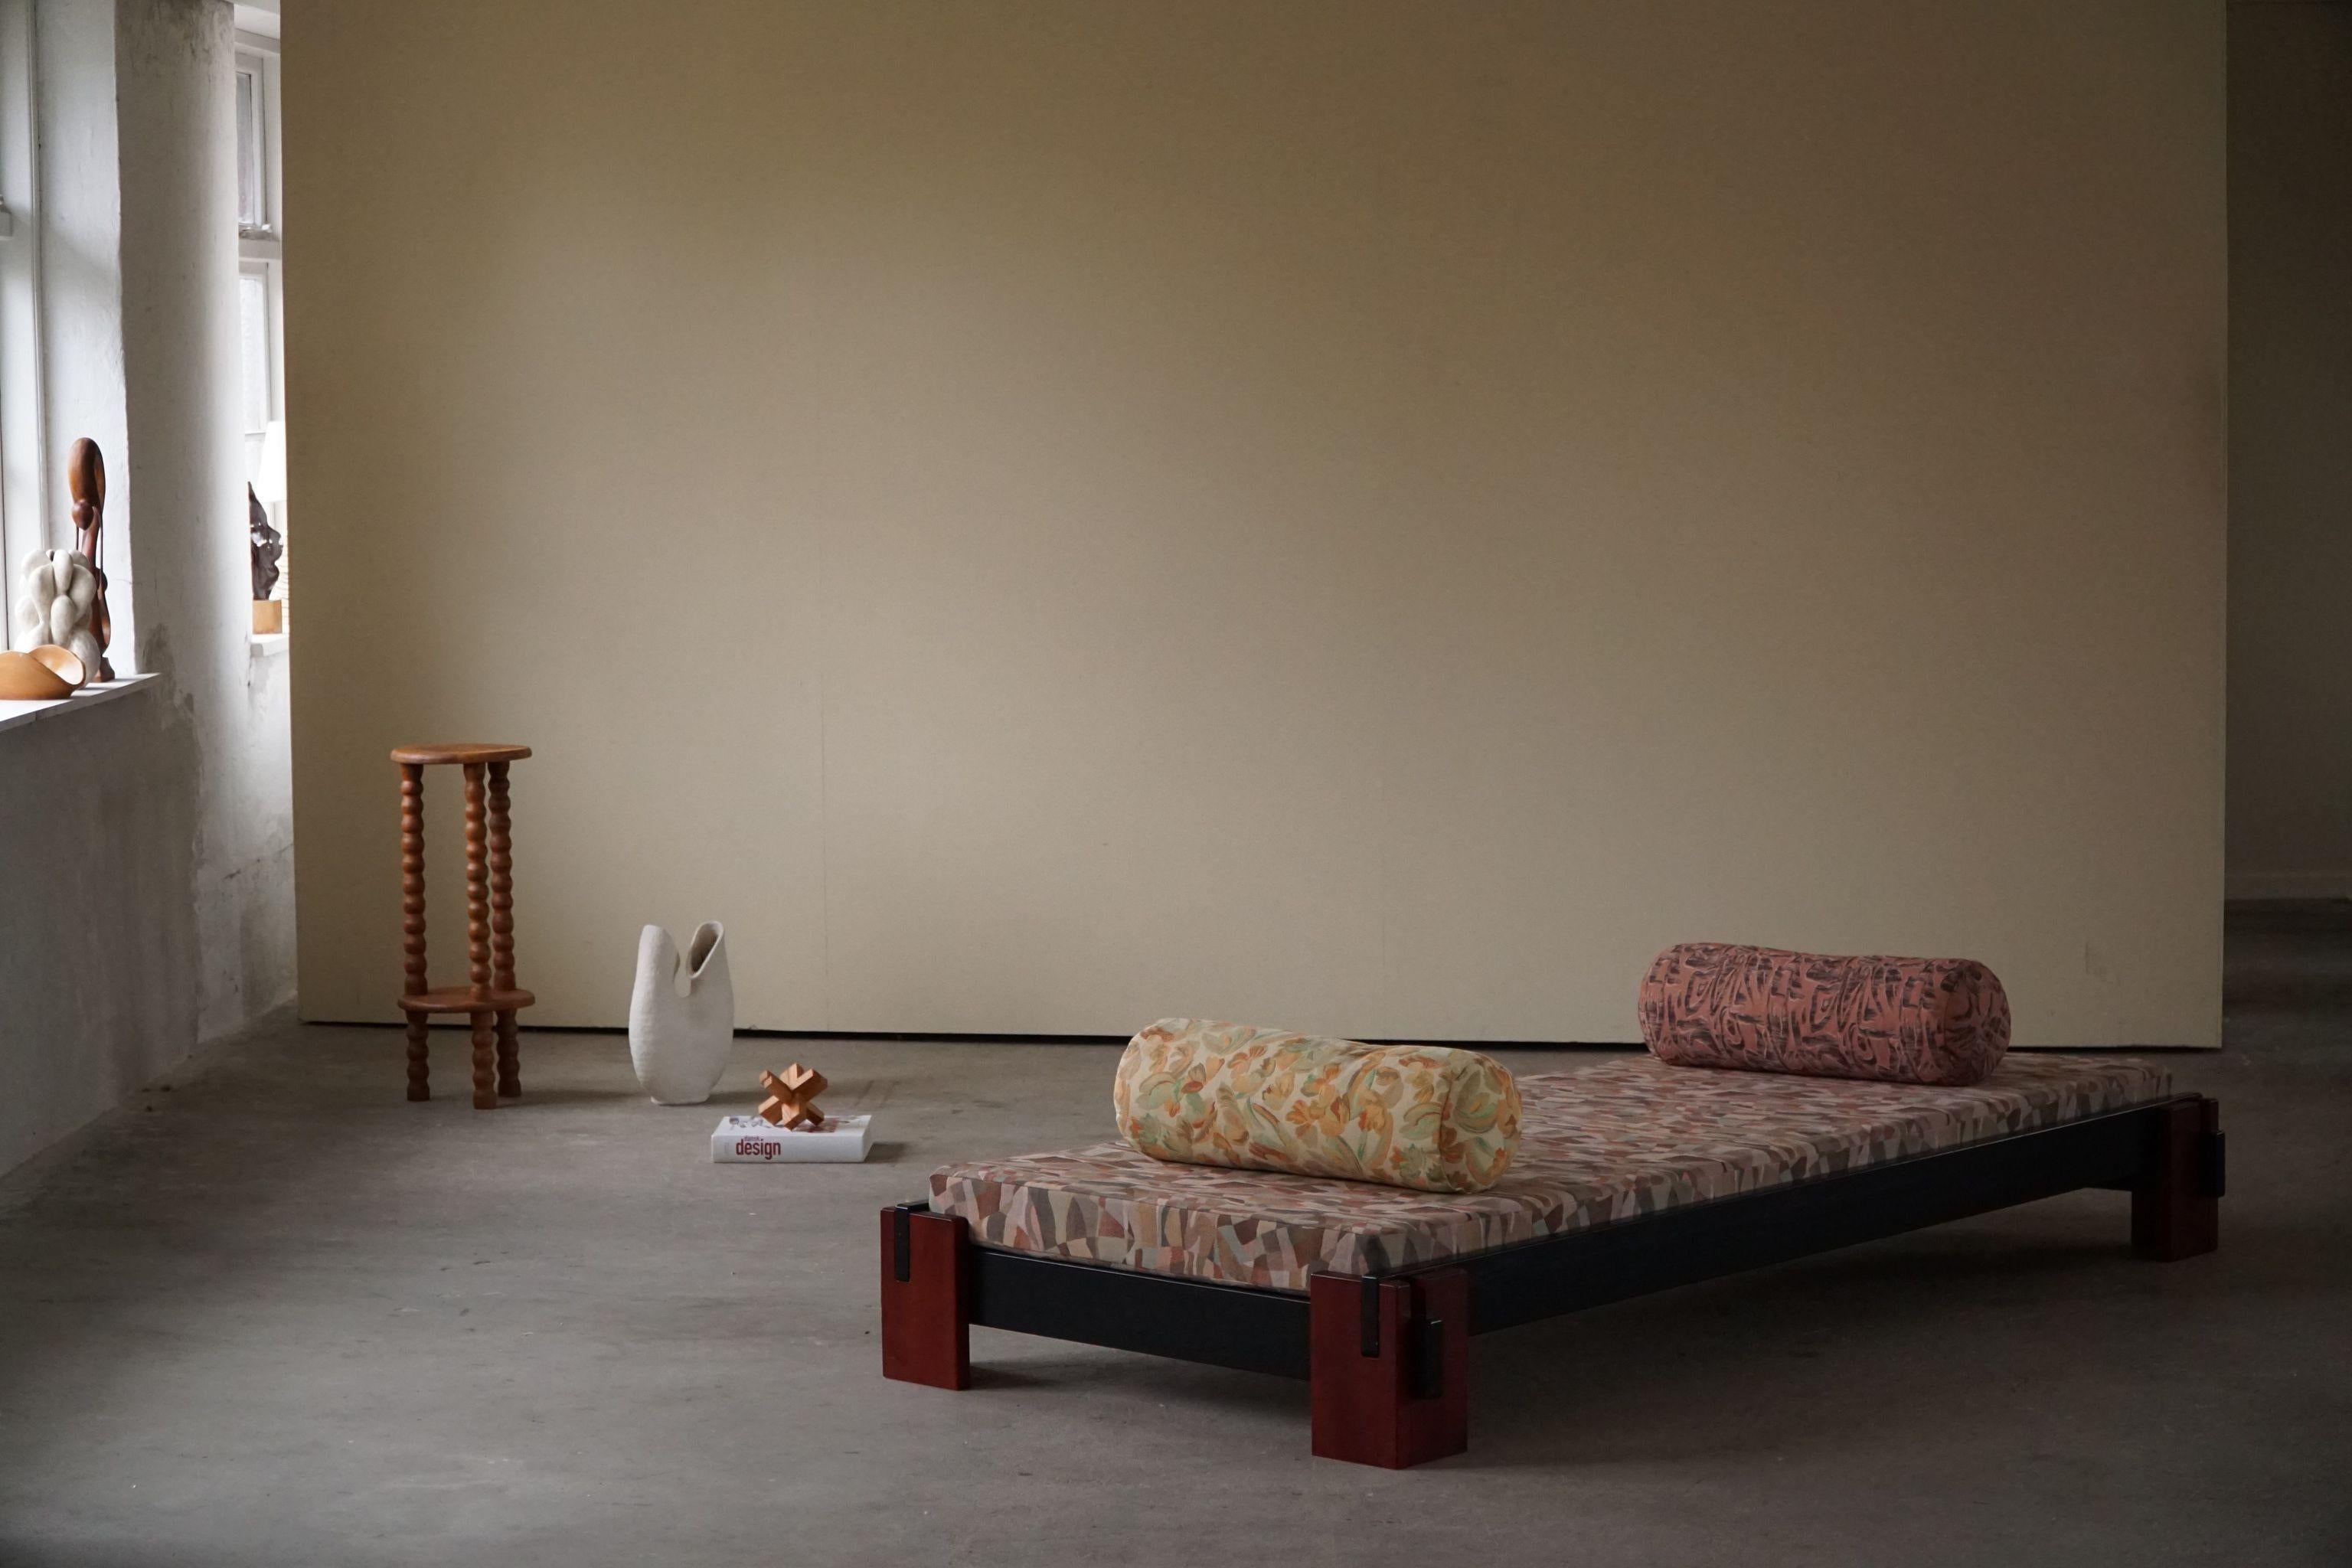 Un lit de jour / canapé minimaliste et ludique avec deux coussins, retapissé dans un tissu gobelin vintage coloré des années 80. Fabriqué par un ébéniste danois dans les années 1980.

Ce magnifique lit de jour vintage s'accordera avec de nombreux